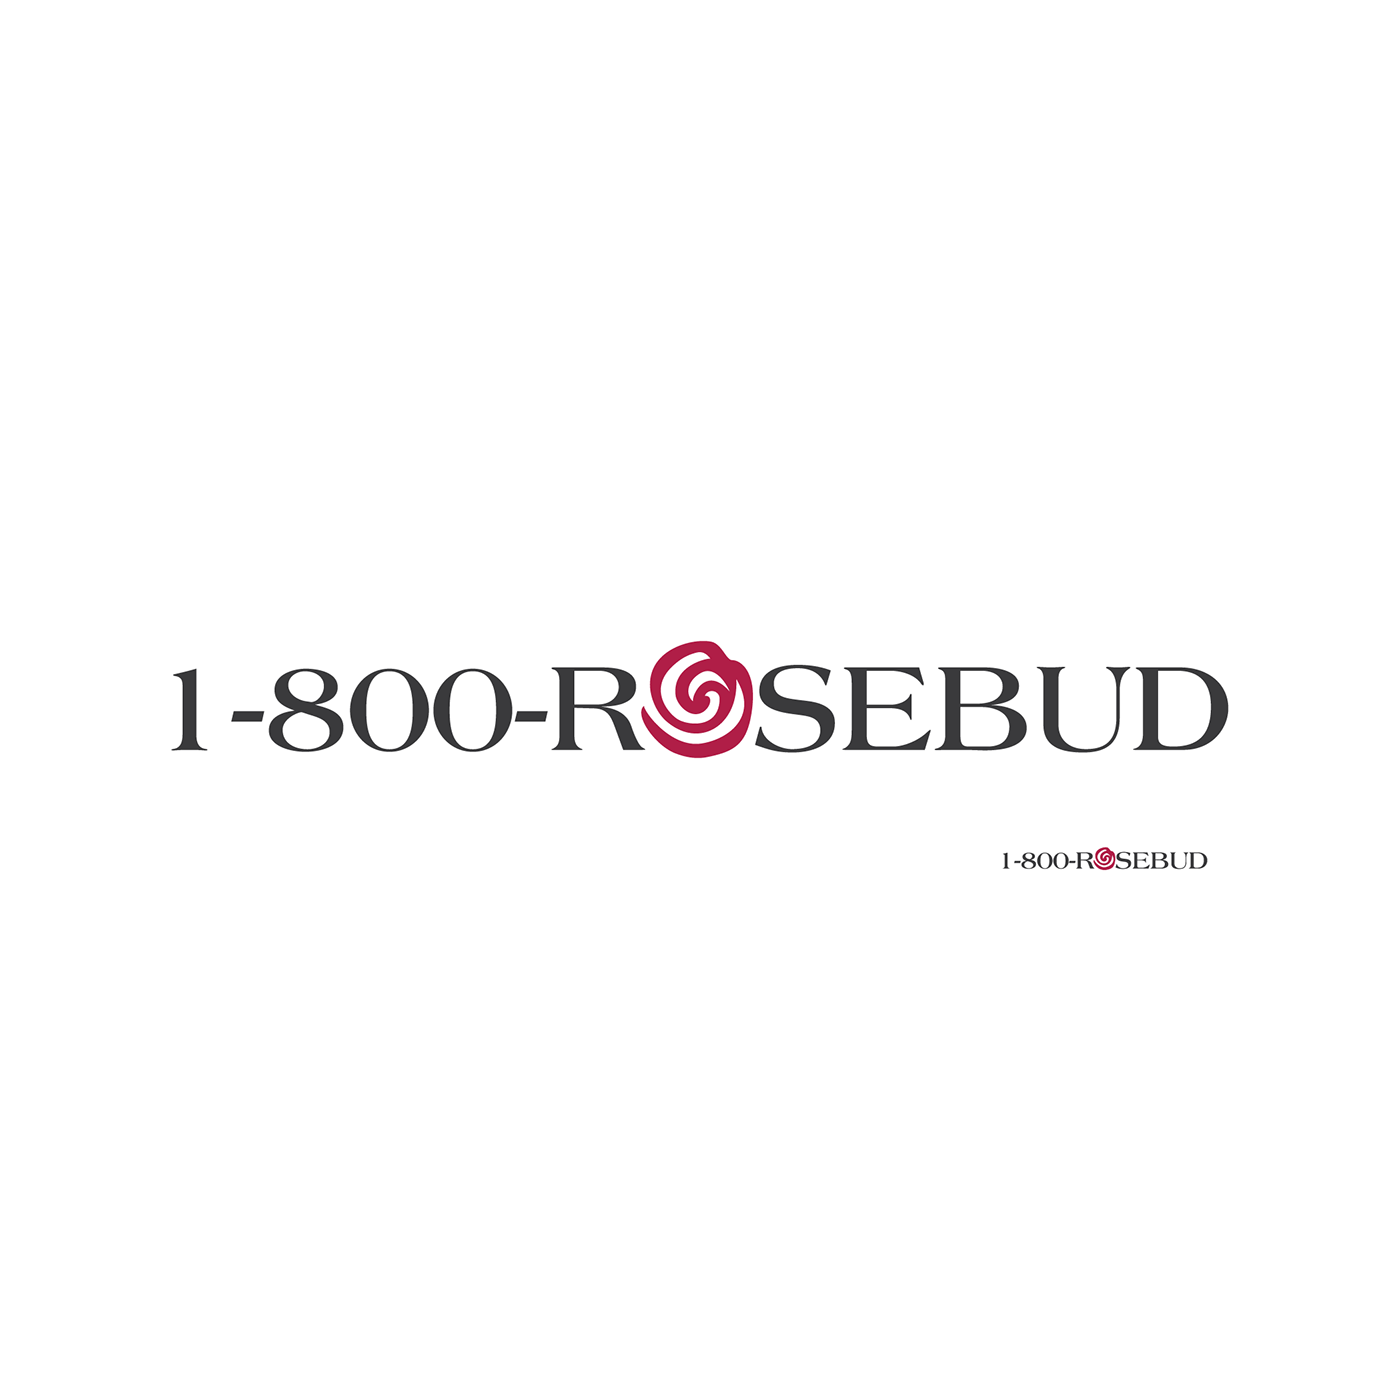 Rosebud Logo - 1-800-Rosebud logo for thirty logos challenge on Behance